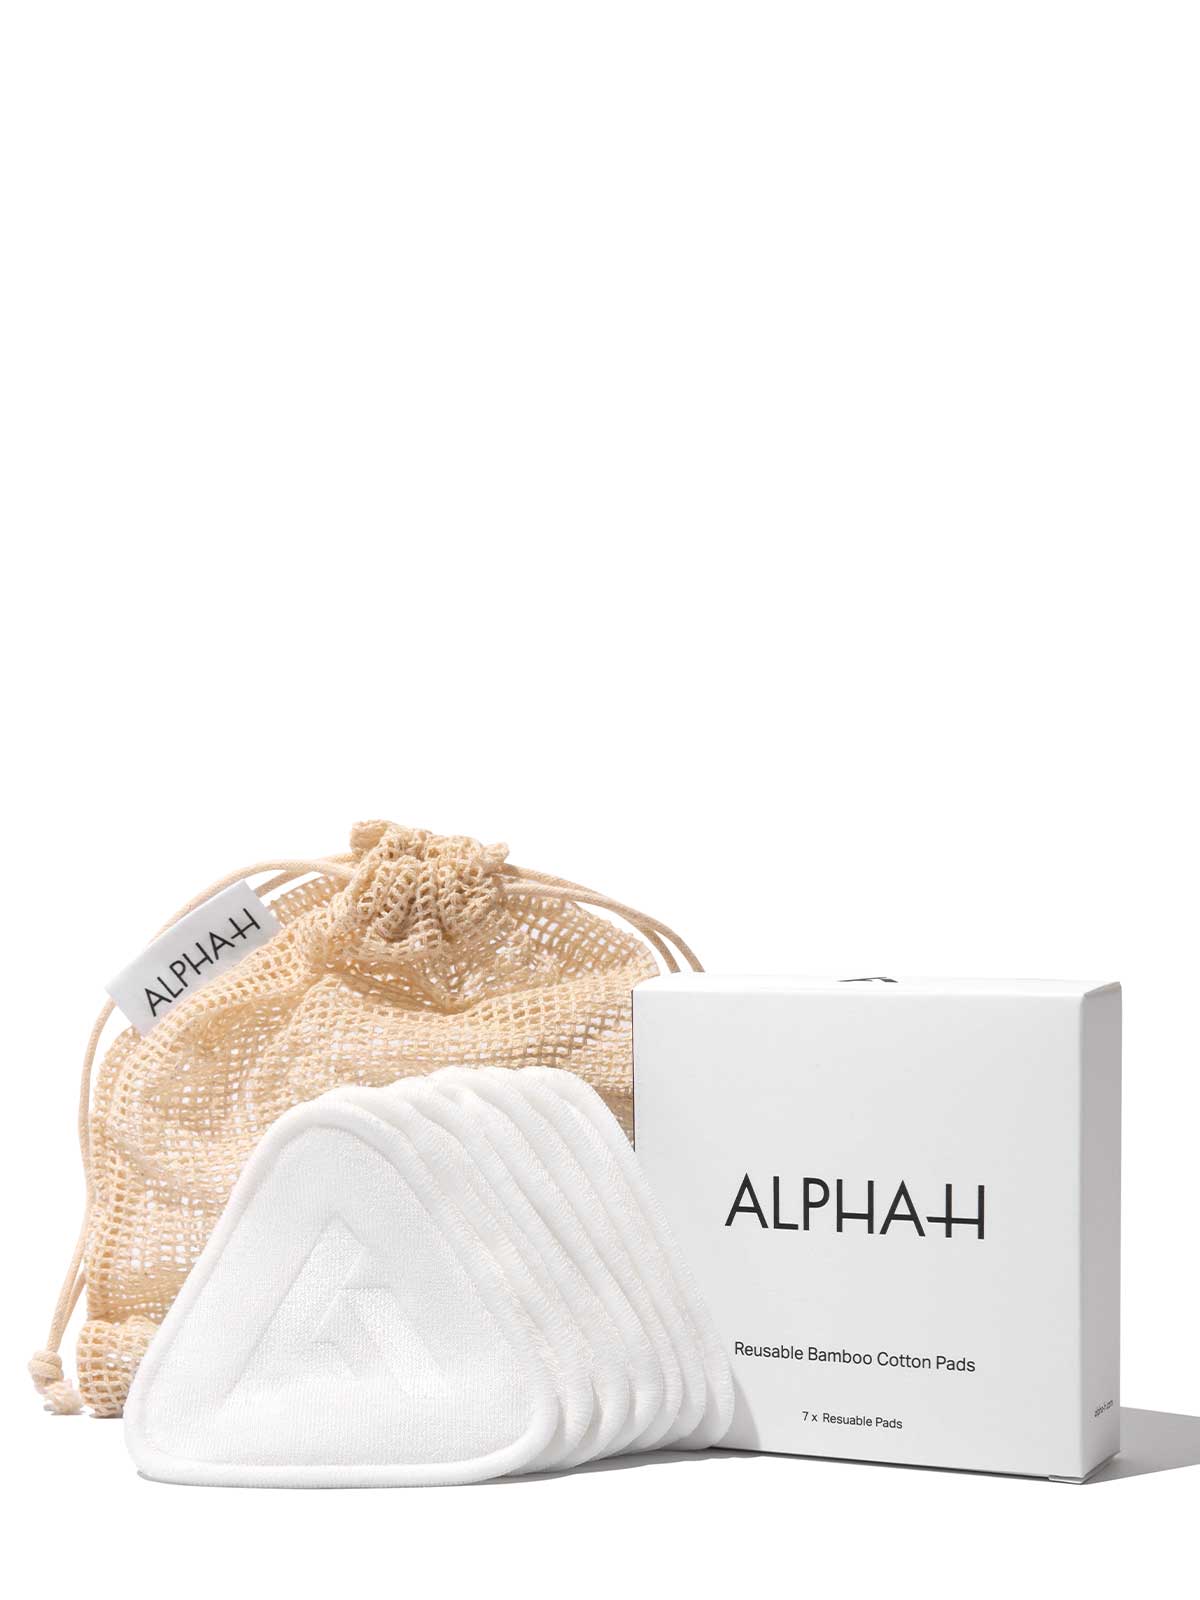 Alpha-H Reusable Bamboo Cotton Pads – 7 Pack